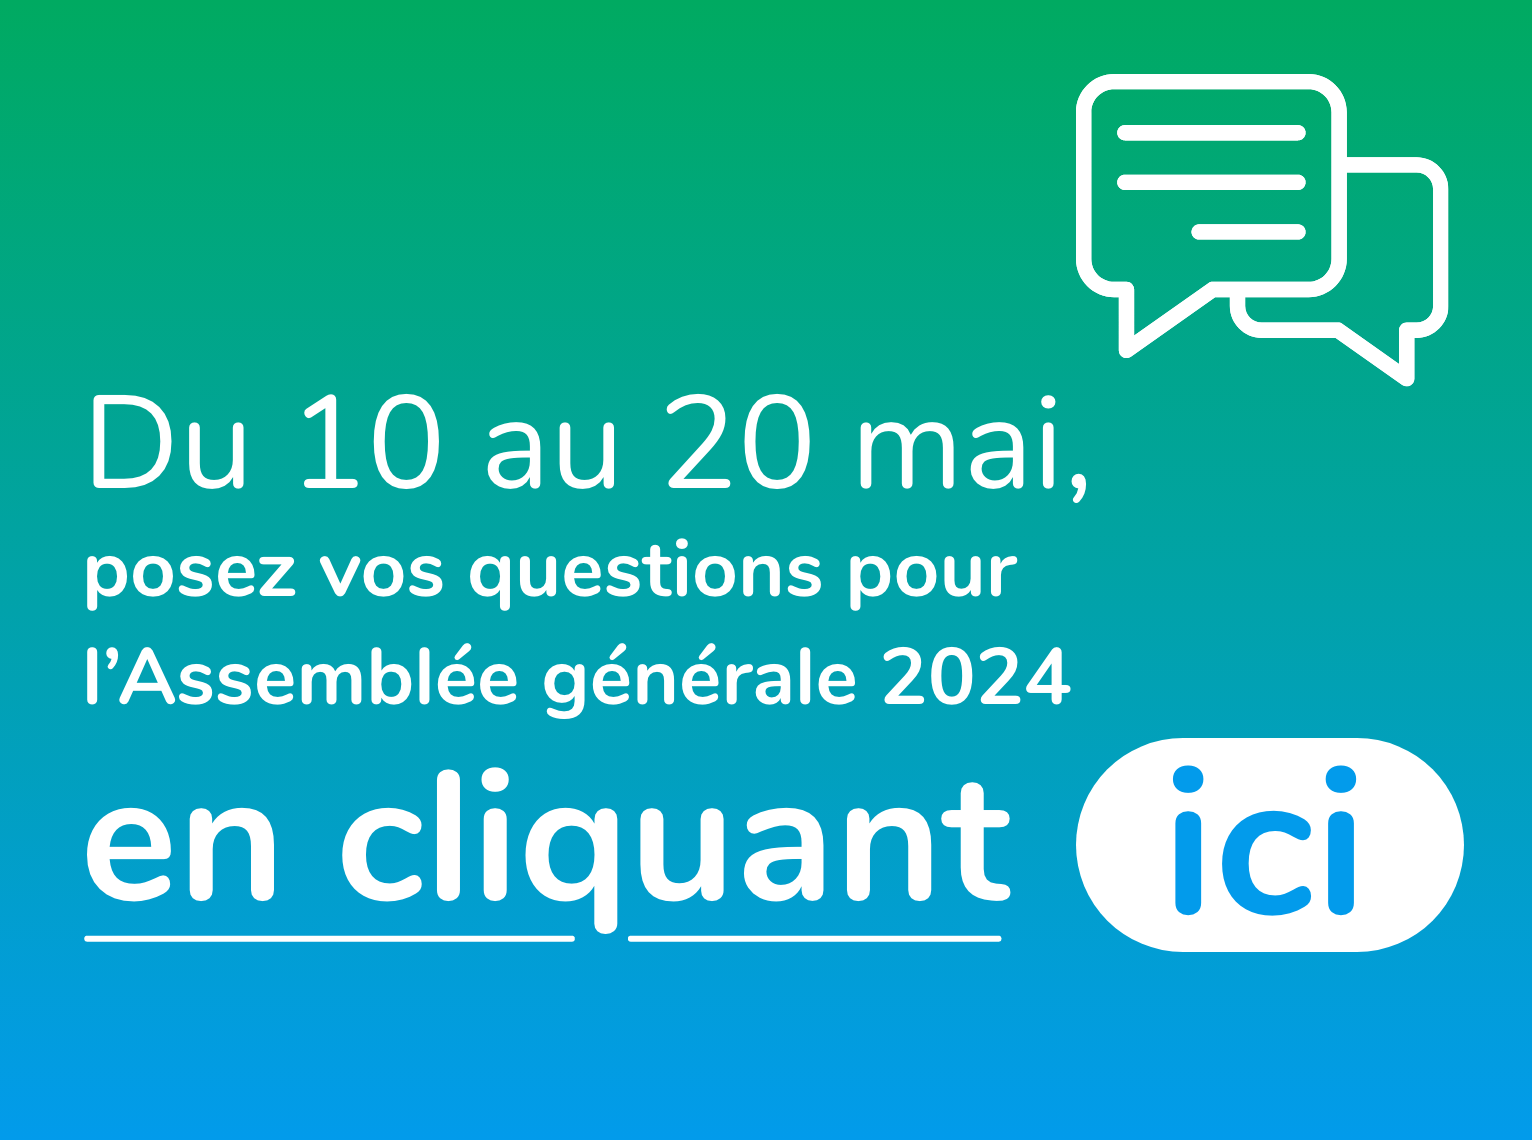 Du 10 au 20 mai posez vos questions pour l'Assemblée générale 2024 en cliquant ici - accéder à la plateforme